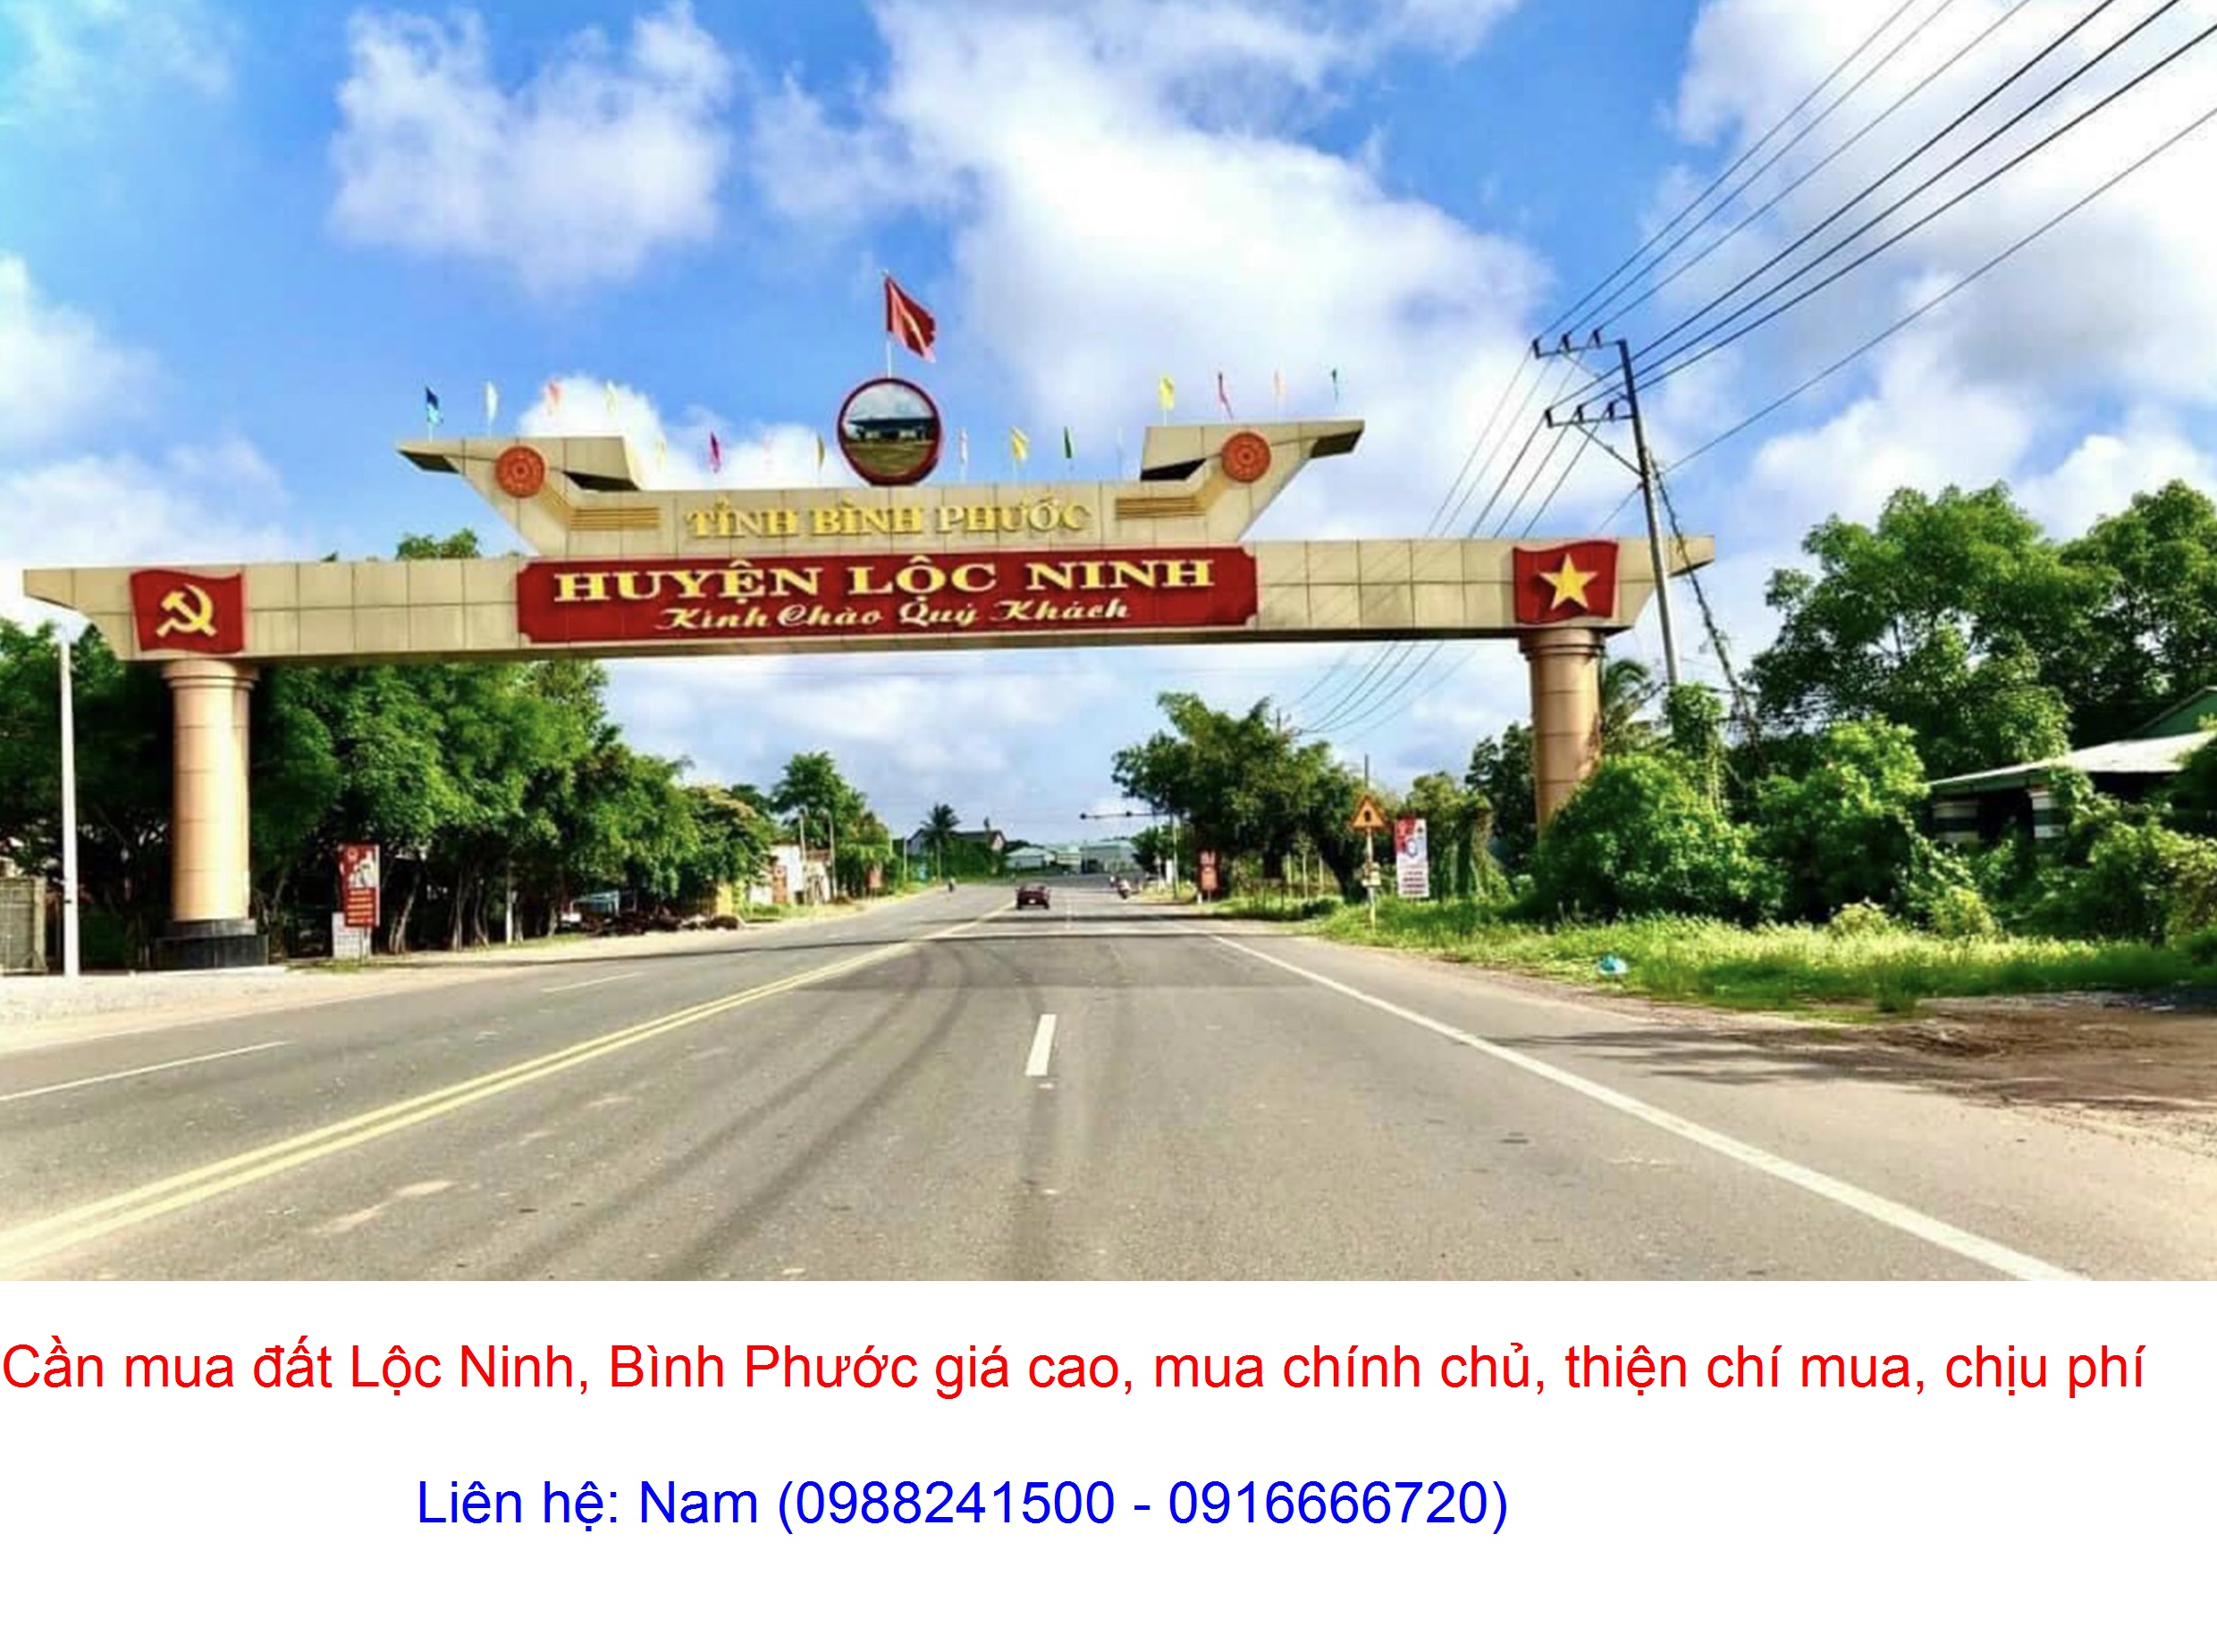 Cần Mua đất xã Lộc Hưng, huyện Lộc Ninh giá cao, thiện chí mua, chịu phí, chồng tiền ngay